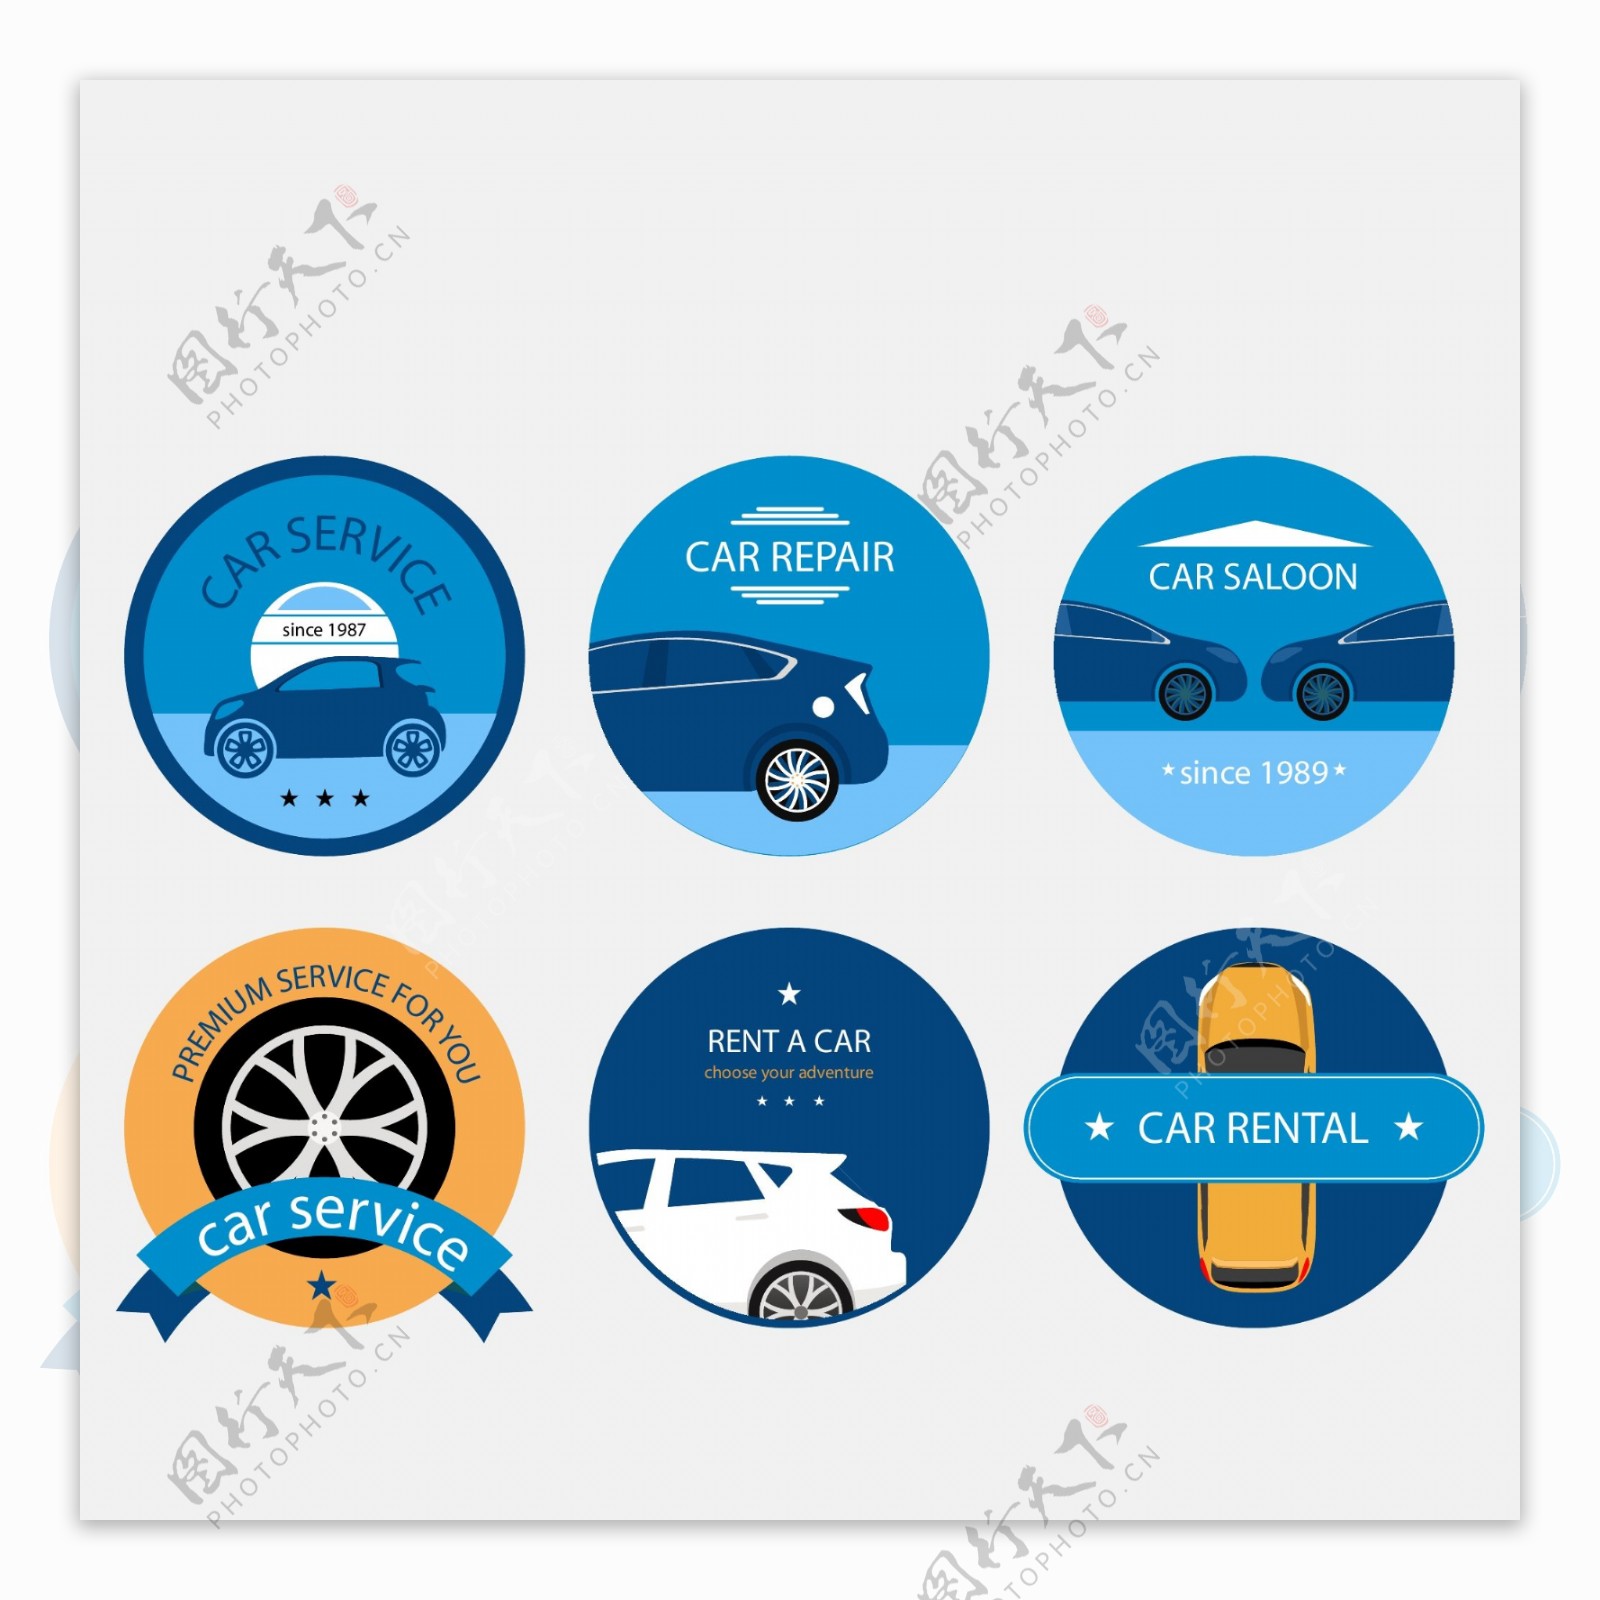 蓝色创意的汽车logo素材